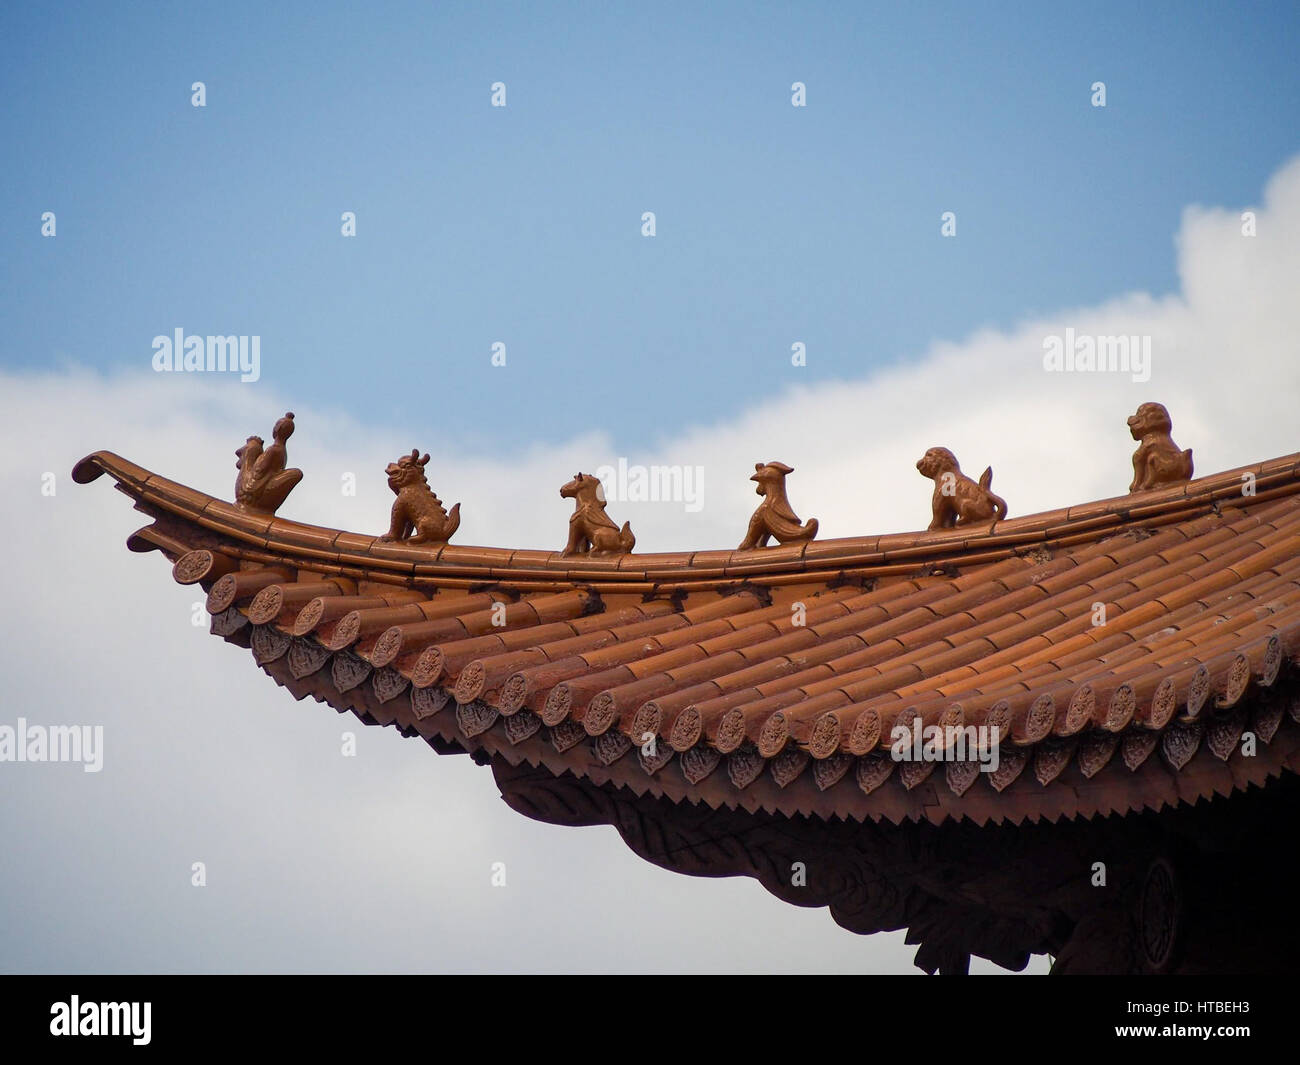 Le figure a guardia della parte superiore di un'arancia piastrellato sul tetto tradizionale in Cina. Foto Stock